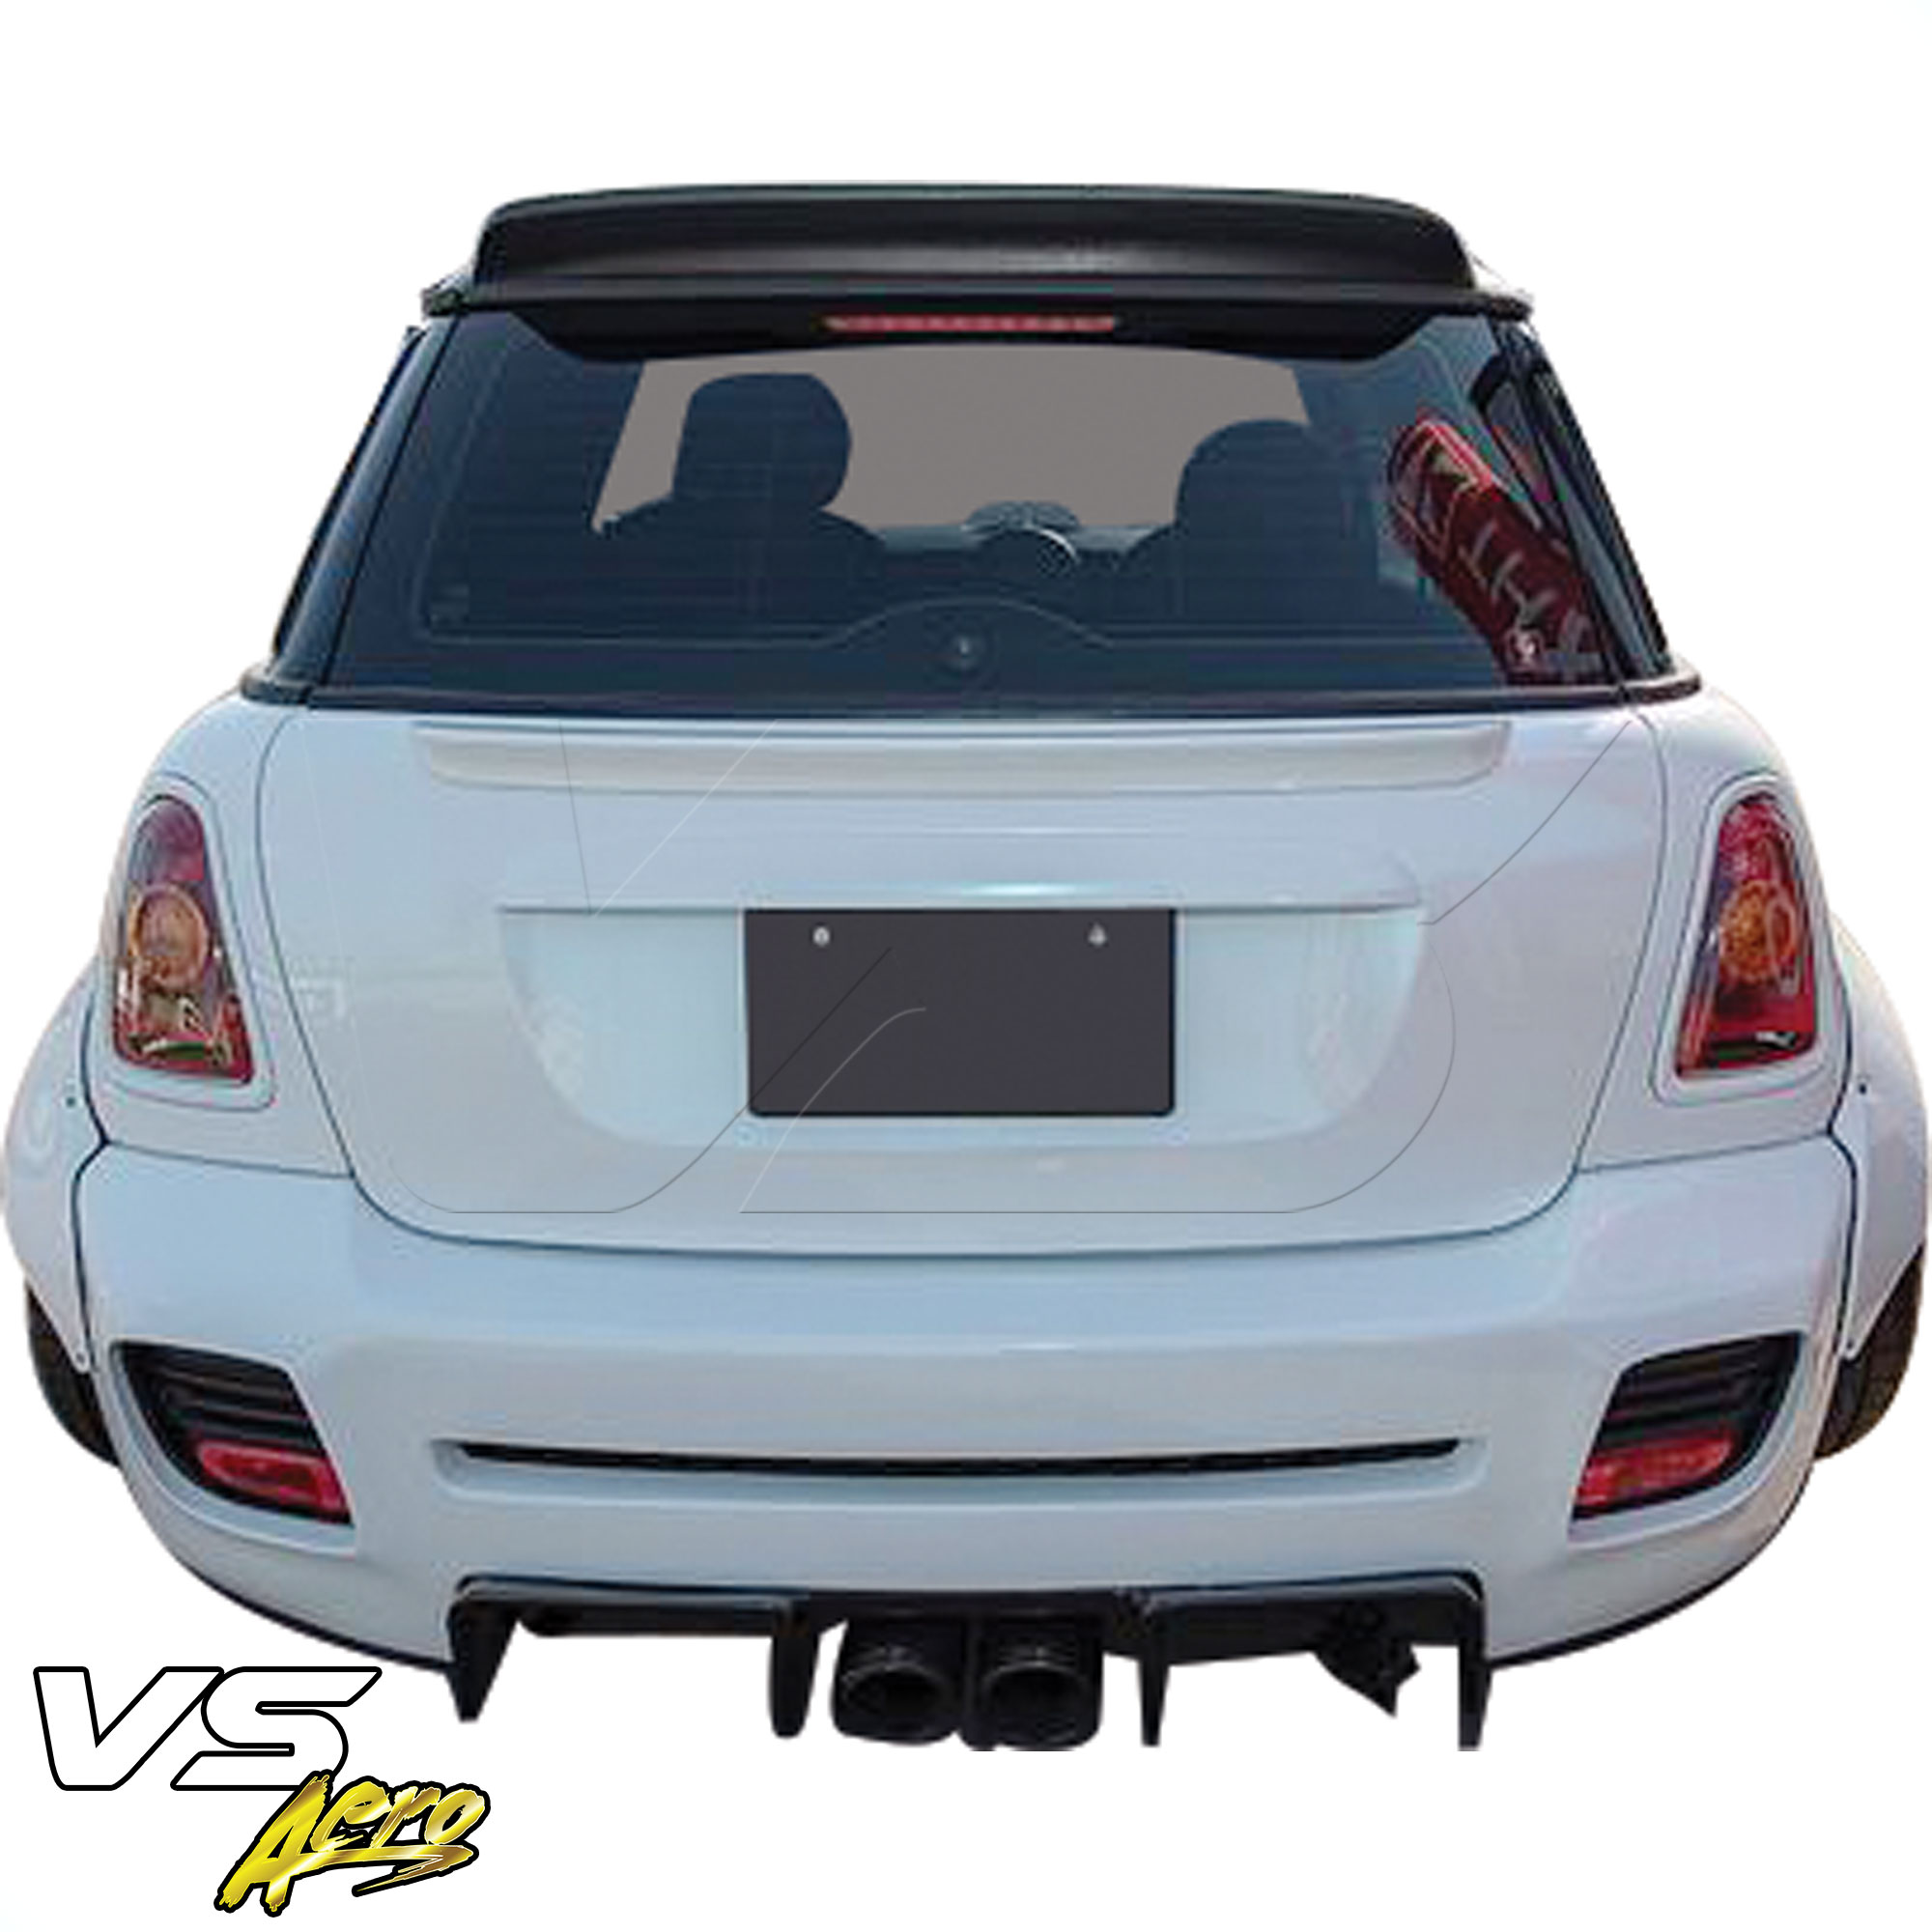 VSaero FRP LBPE Wide Body Rear Bumper 2pc > Mini Cooper R56 R57 2007-2013 - Image 3